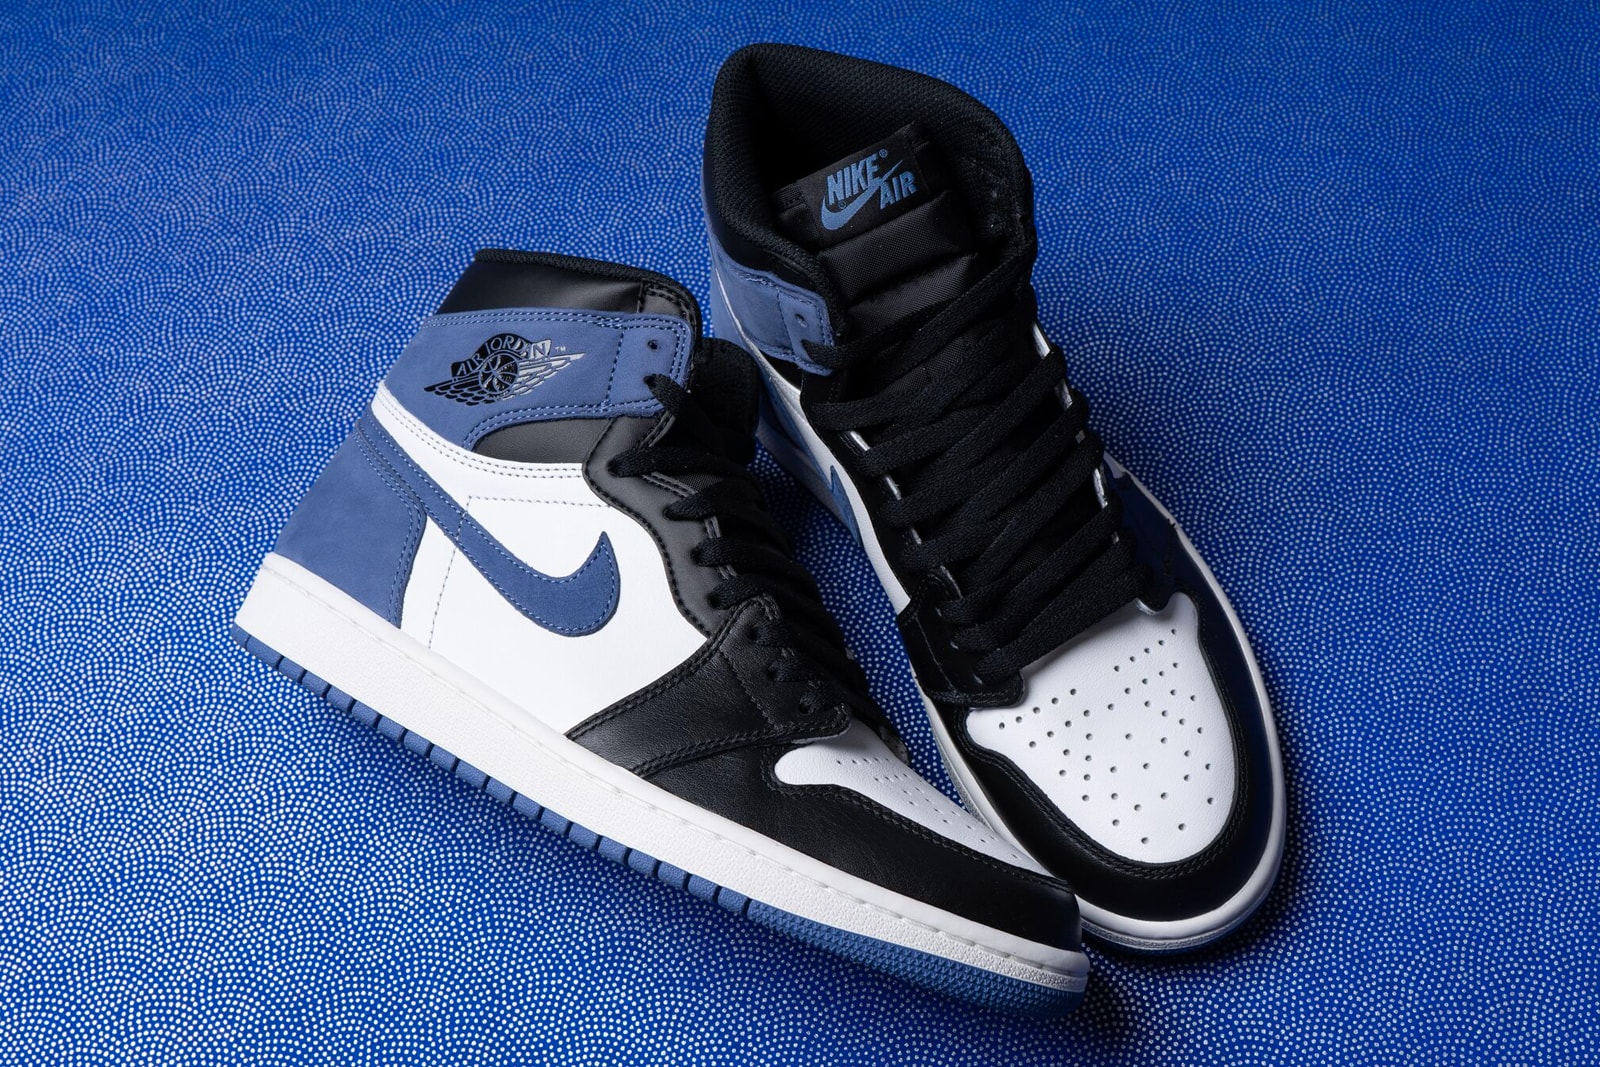 Air Jordan 1 Retro High "Blue Moon" colorway release date may 1 drop info sneakers footwear